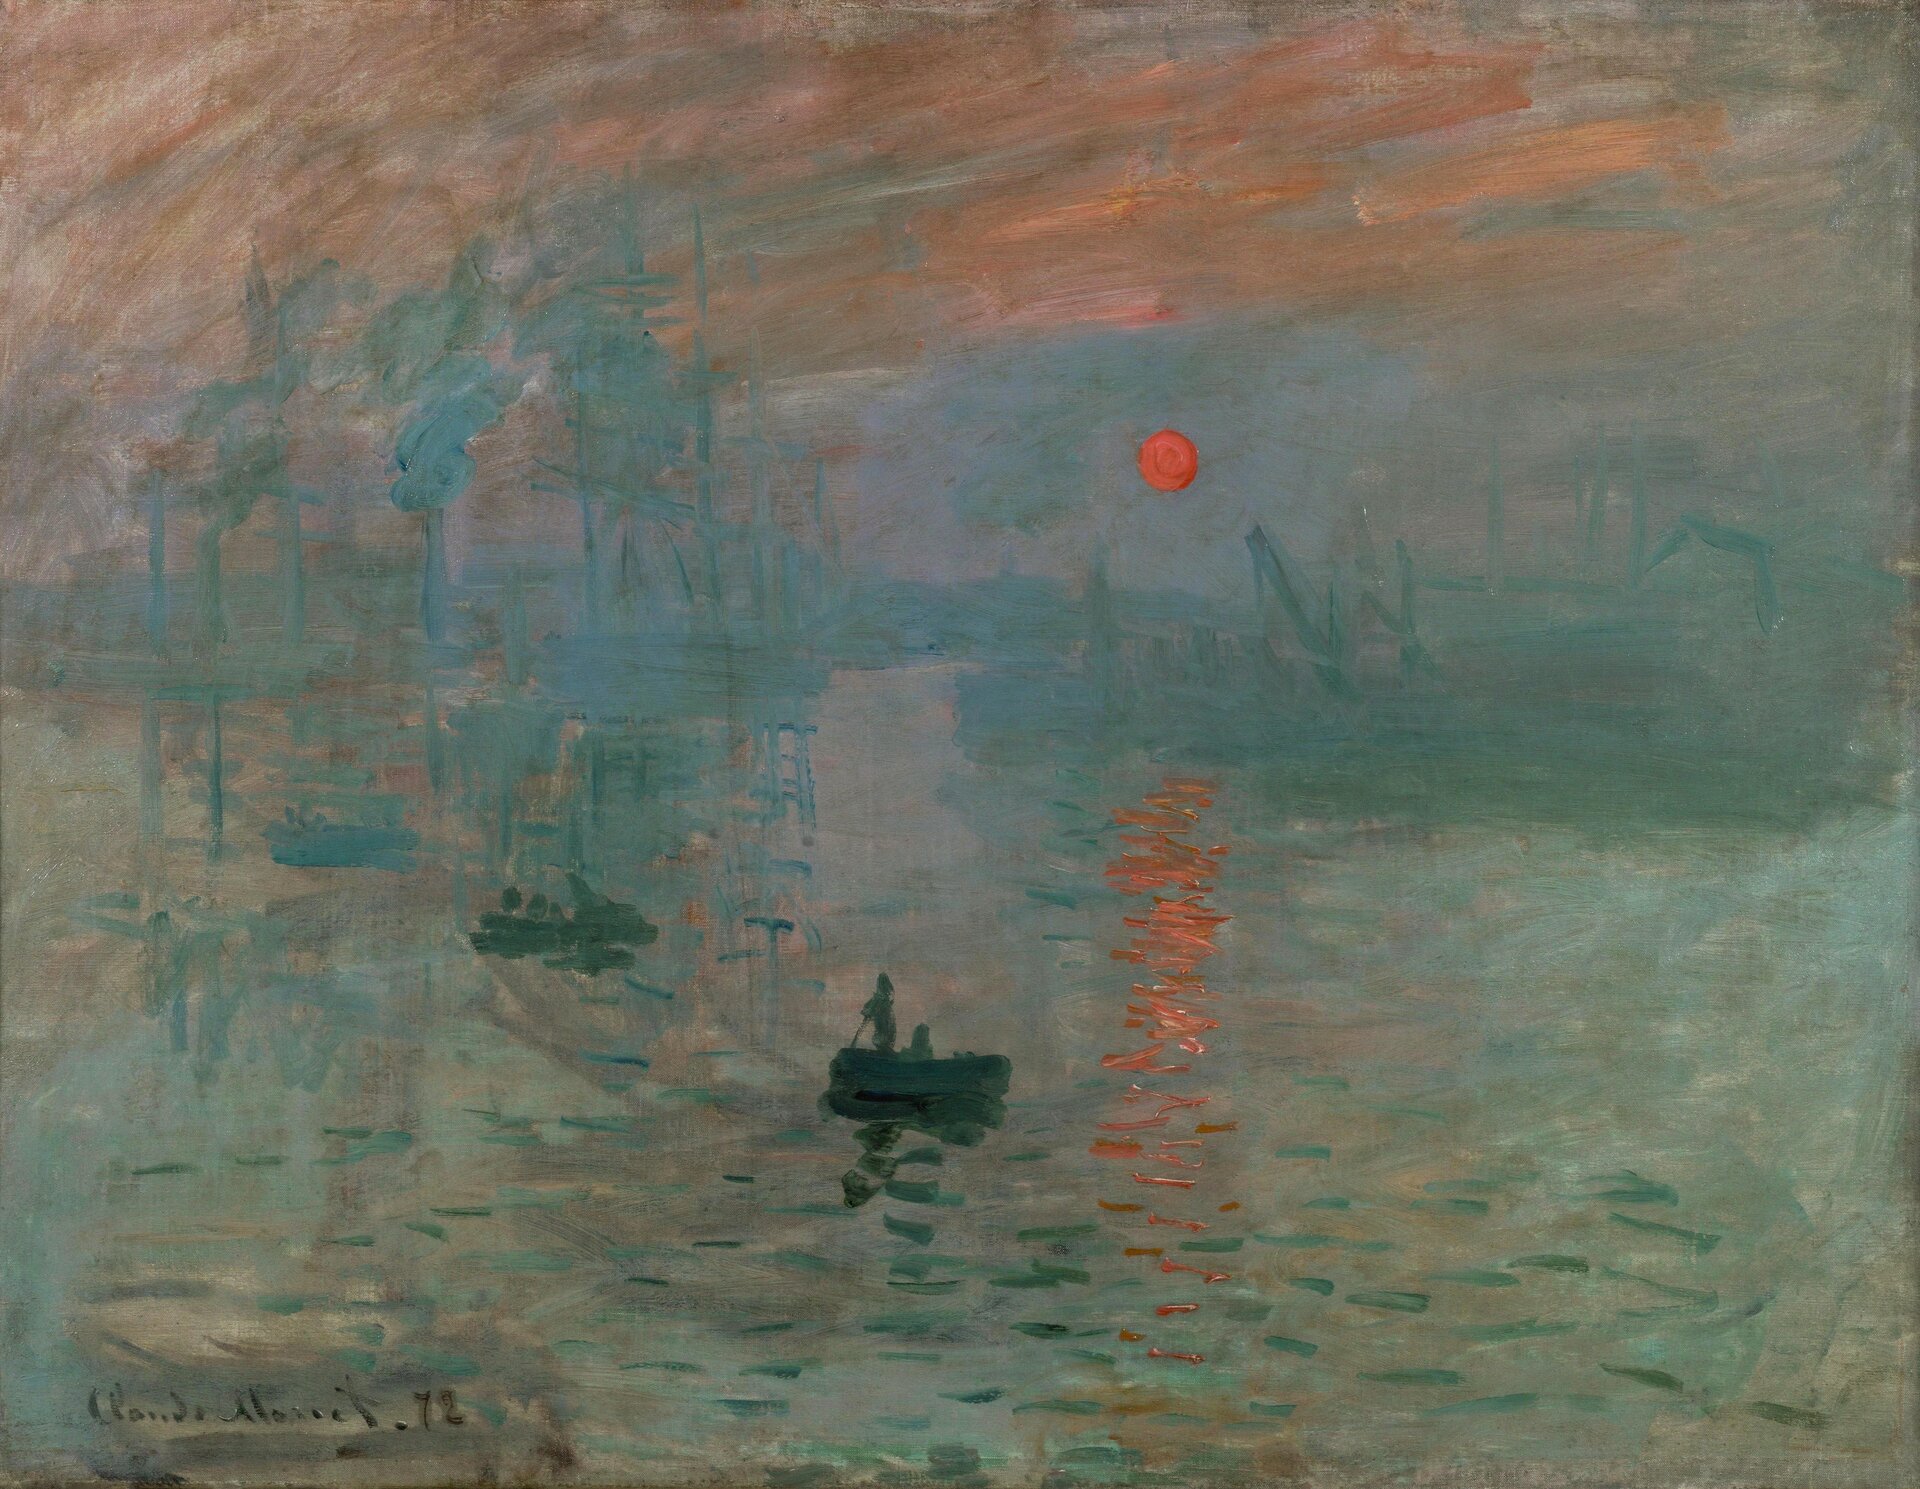 Ilustracja przedstawia obraz Claude’a Moneta „Impresja. Wschód słońca”. Ukazuje zatokę portową ze statkami w tle. Na wozie płyną łodzie. Na niebie, lekko z prawej strony znajduje się czerwono-pomarańczowe wschodzące słońce, odbijające się w tafli wody. Obraz utrzymany jest w niebiesko-szarej, mglistej tonacji z pomarańczowym niebem w górnej partii dzieła.